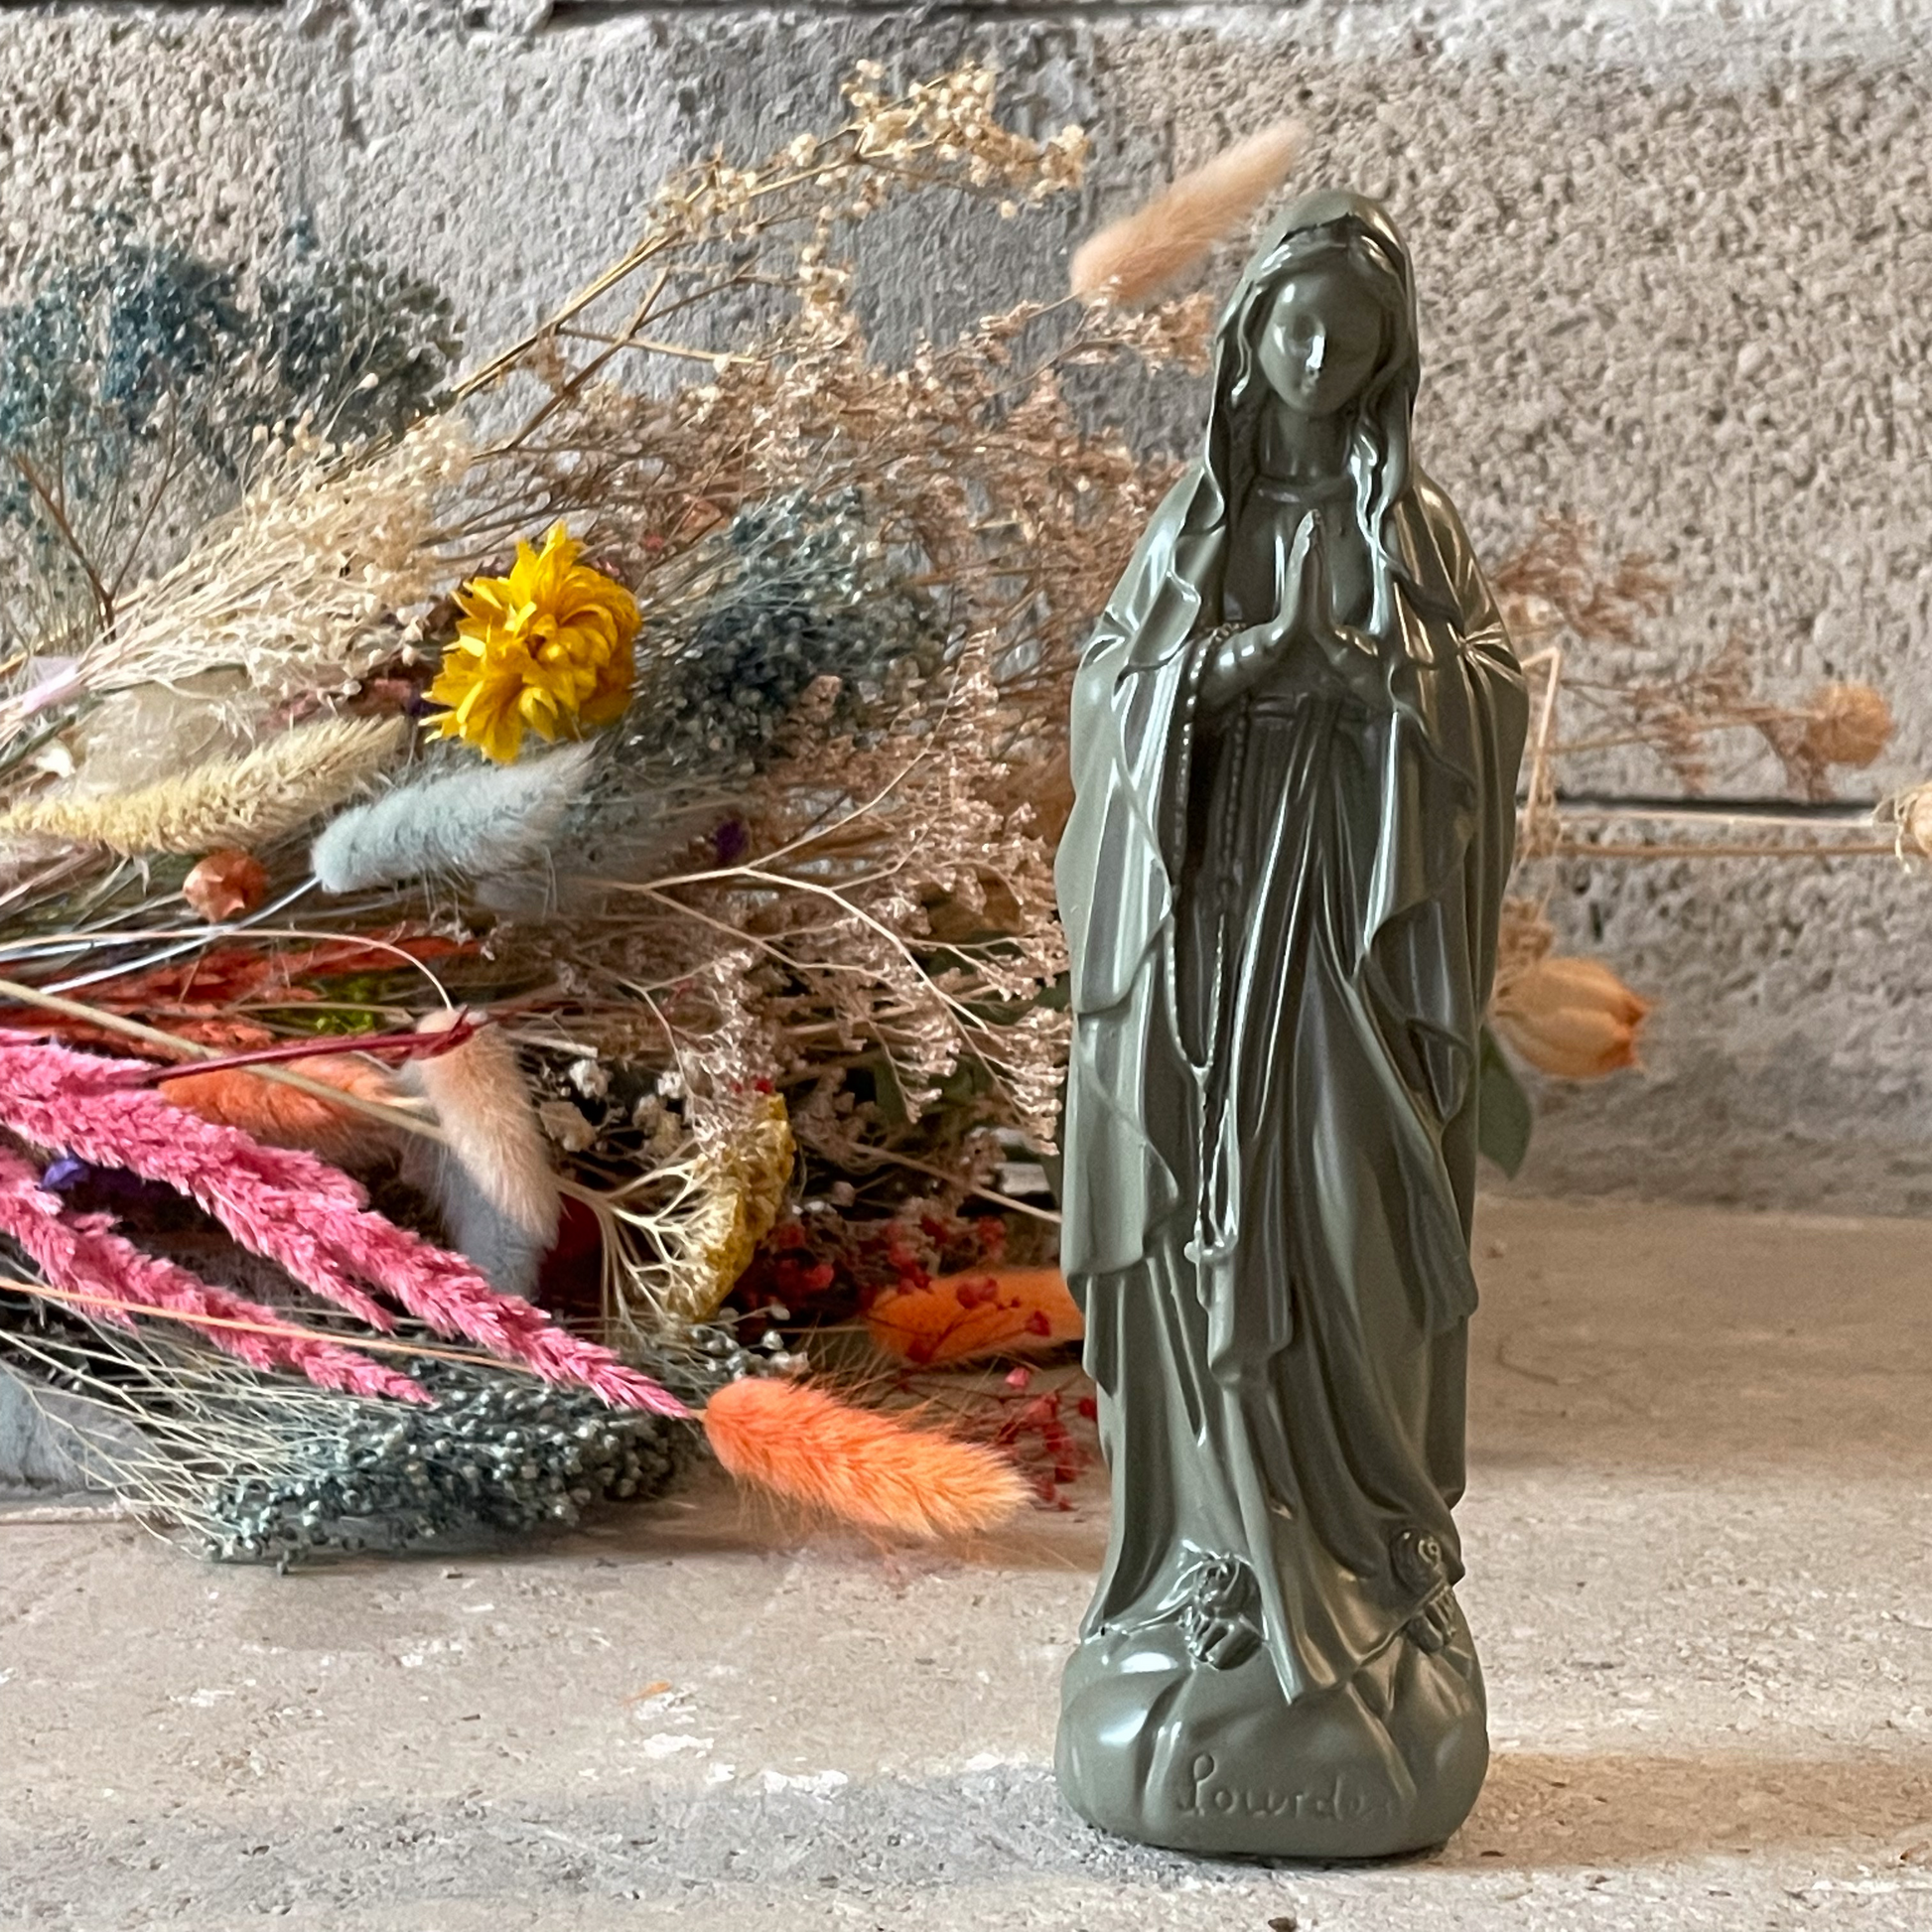 Statuette décoration d'intérieur Vierge Marie Lourdes 18 cm